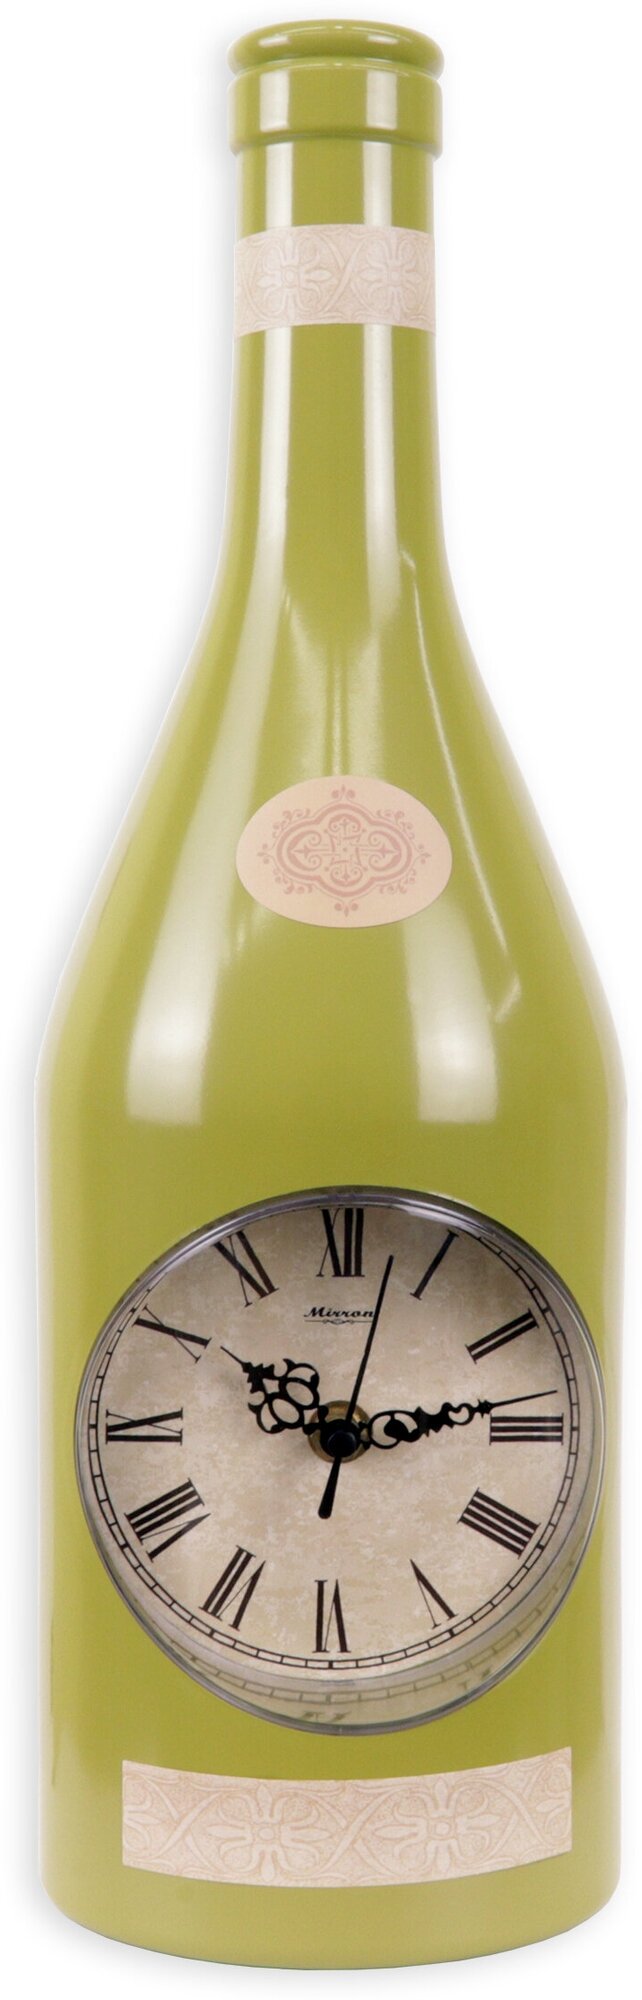 Кухонные настенные часы MIRRON 121-175 ЗЛ/Часы в форме бутылки/Зелёный цвет корпуса/Тематические часы/Оригинальные часы на кухню/Циферблат с римскими цифрами